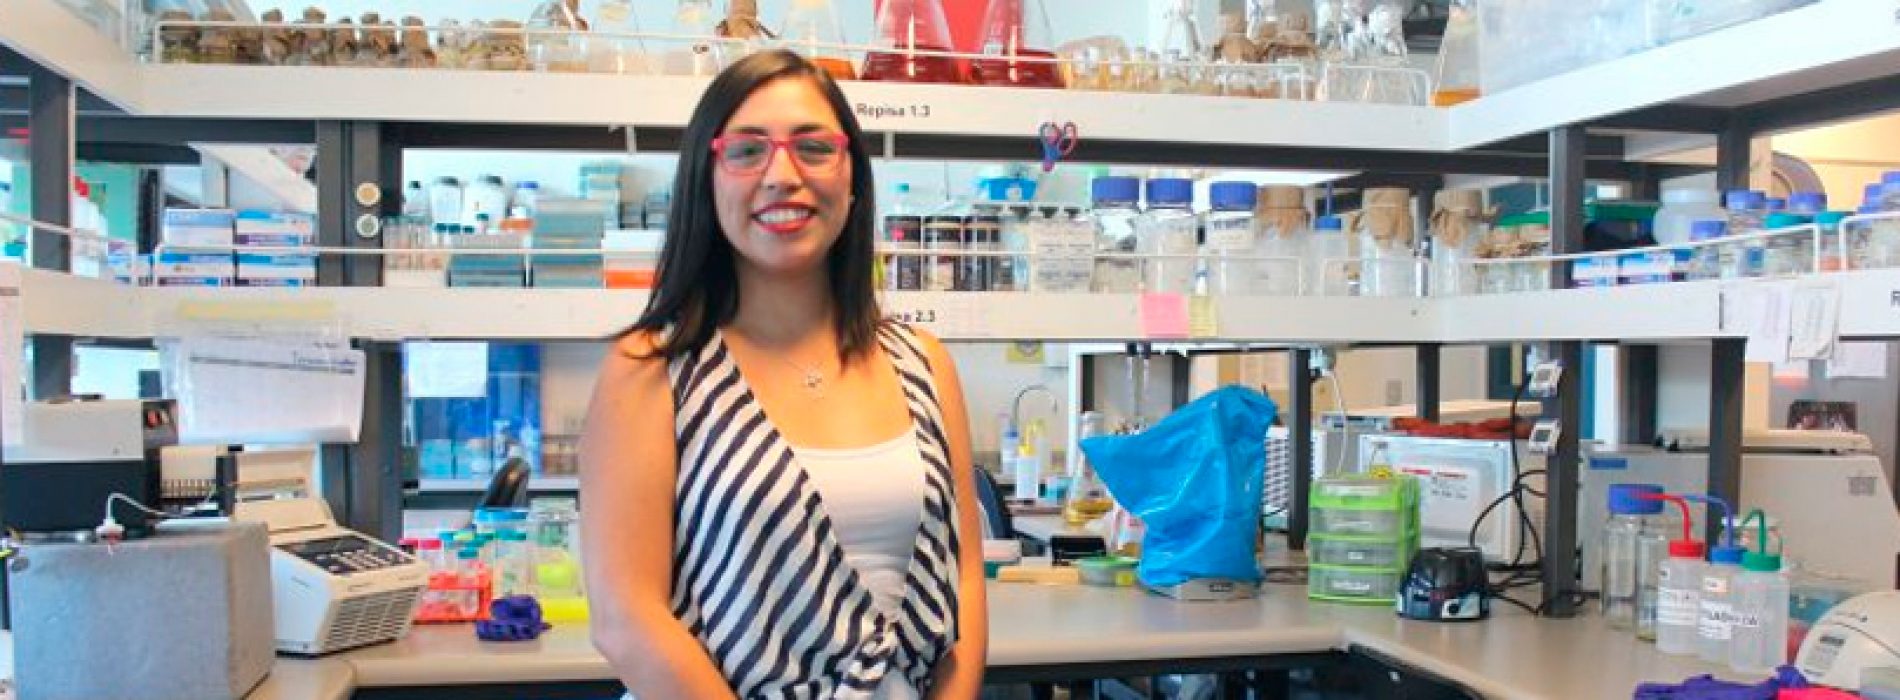 Francesca Burgos, Posdoctorada de Bioquímica, obtiene prestigiosa Beca PEW para becarios latinoamericanos en Ciencias Biomédicas